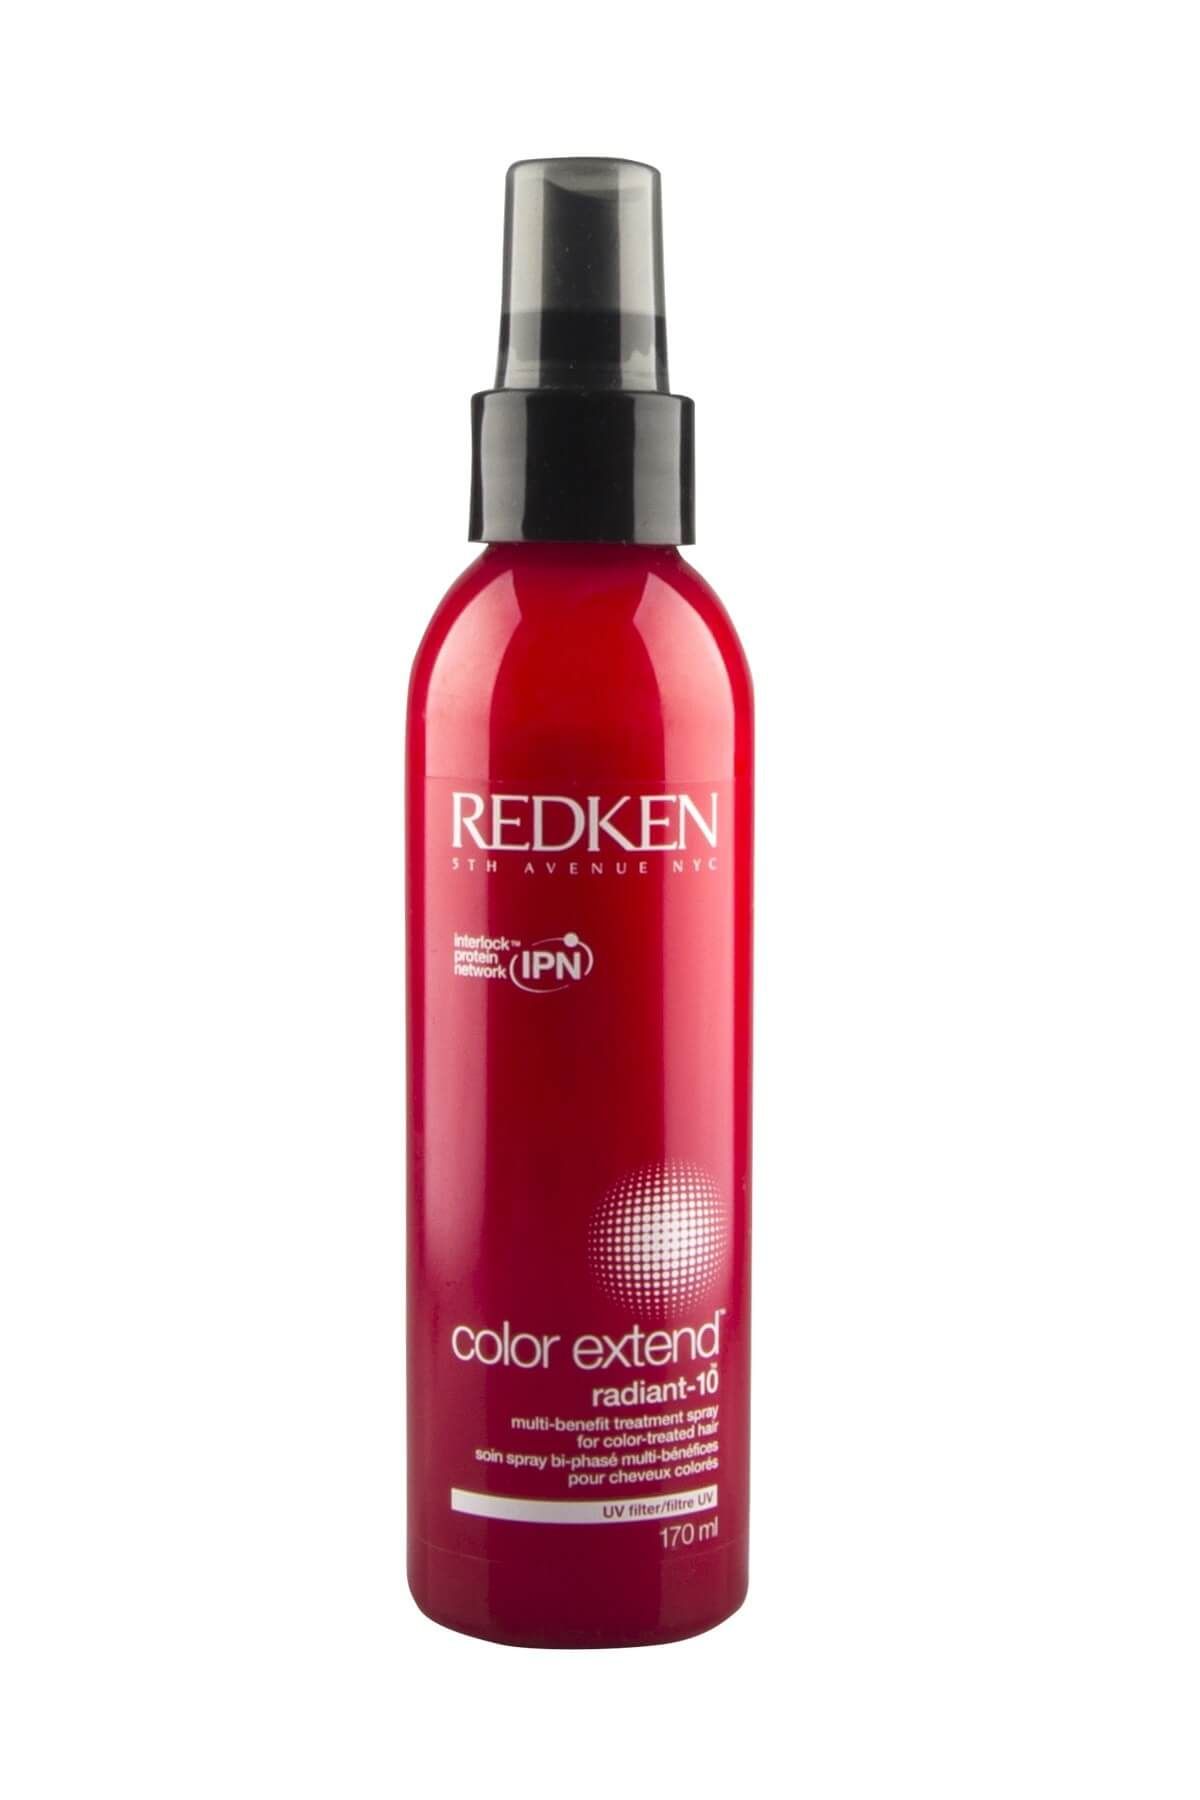 REDKEN Boyalı Saçlar için Besleyici Sprey 170 ml - Redken Color Extend Radiant-10  884486080172